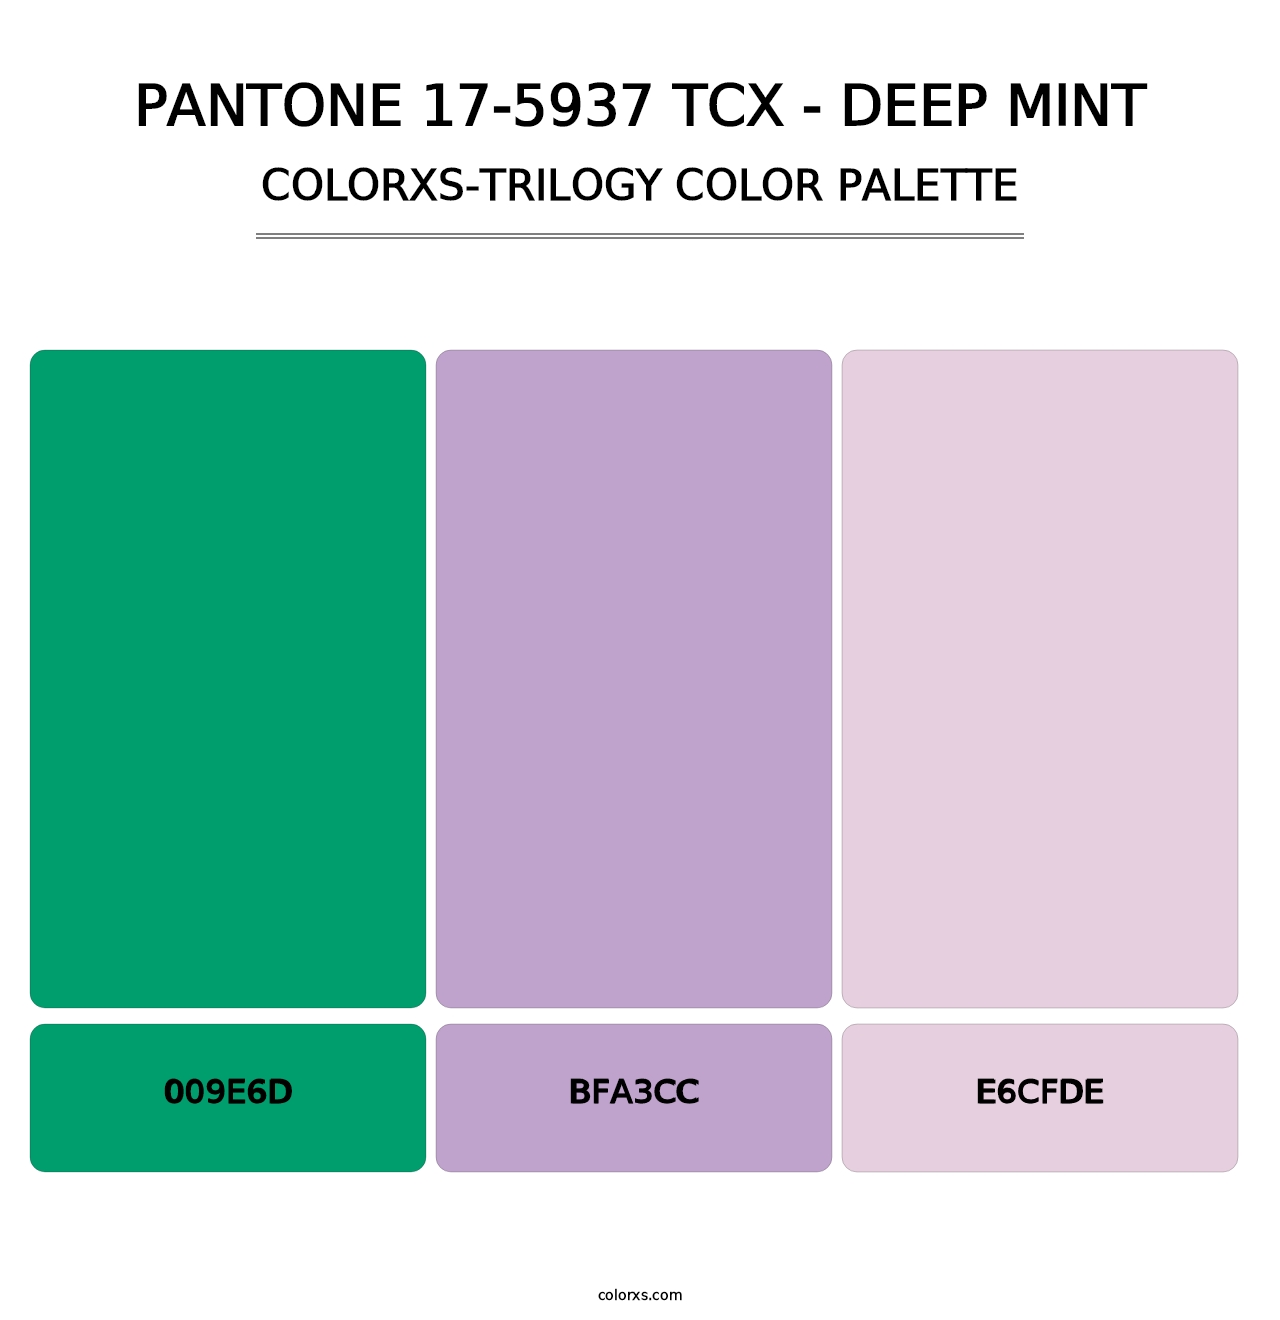 PANTONE 17-5937 TCX - Deep Mint - Colorxs Trilogy Palette